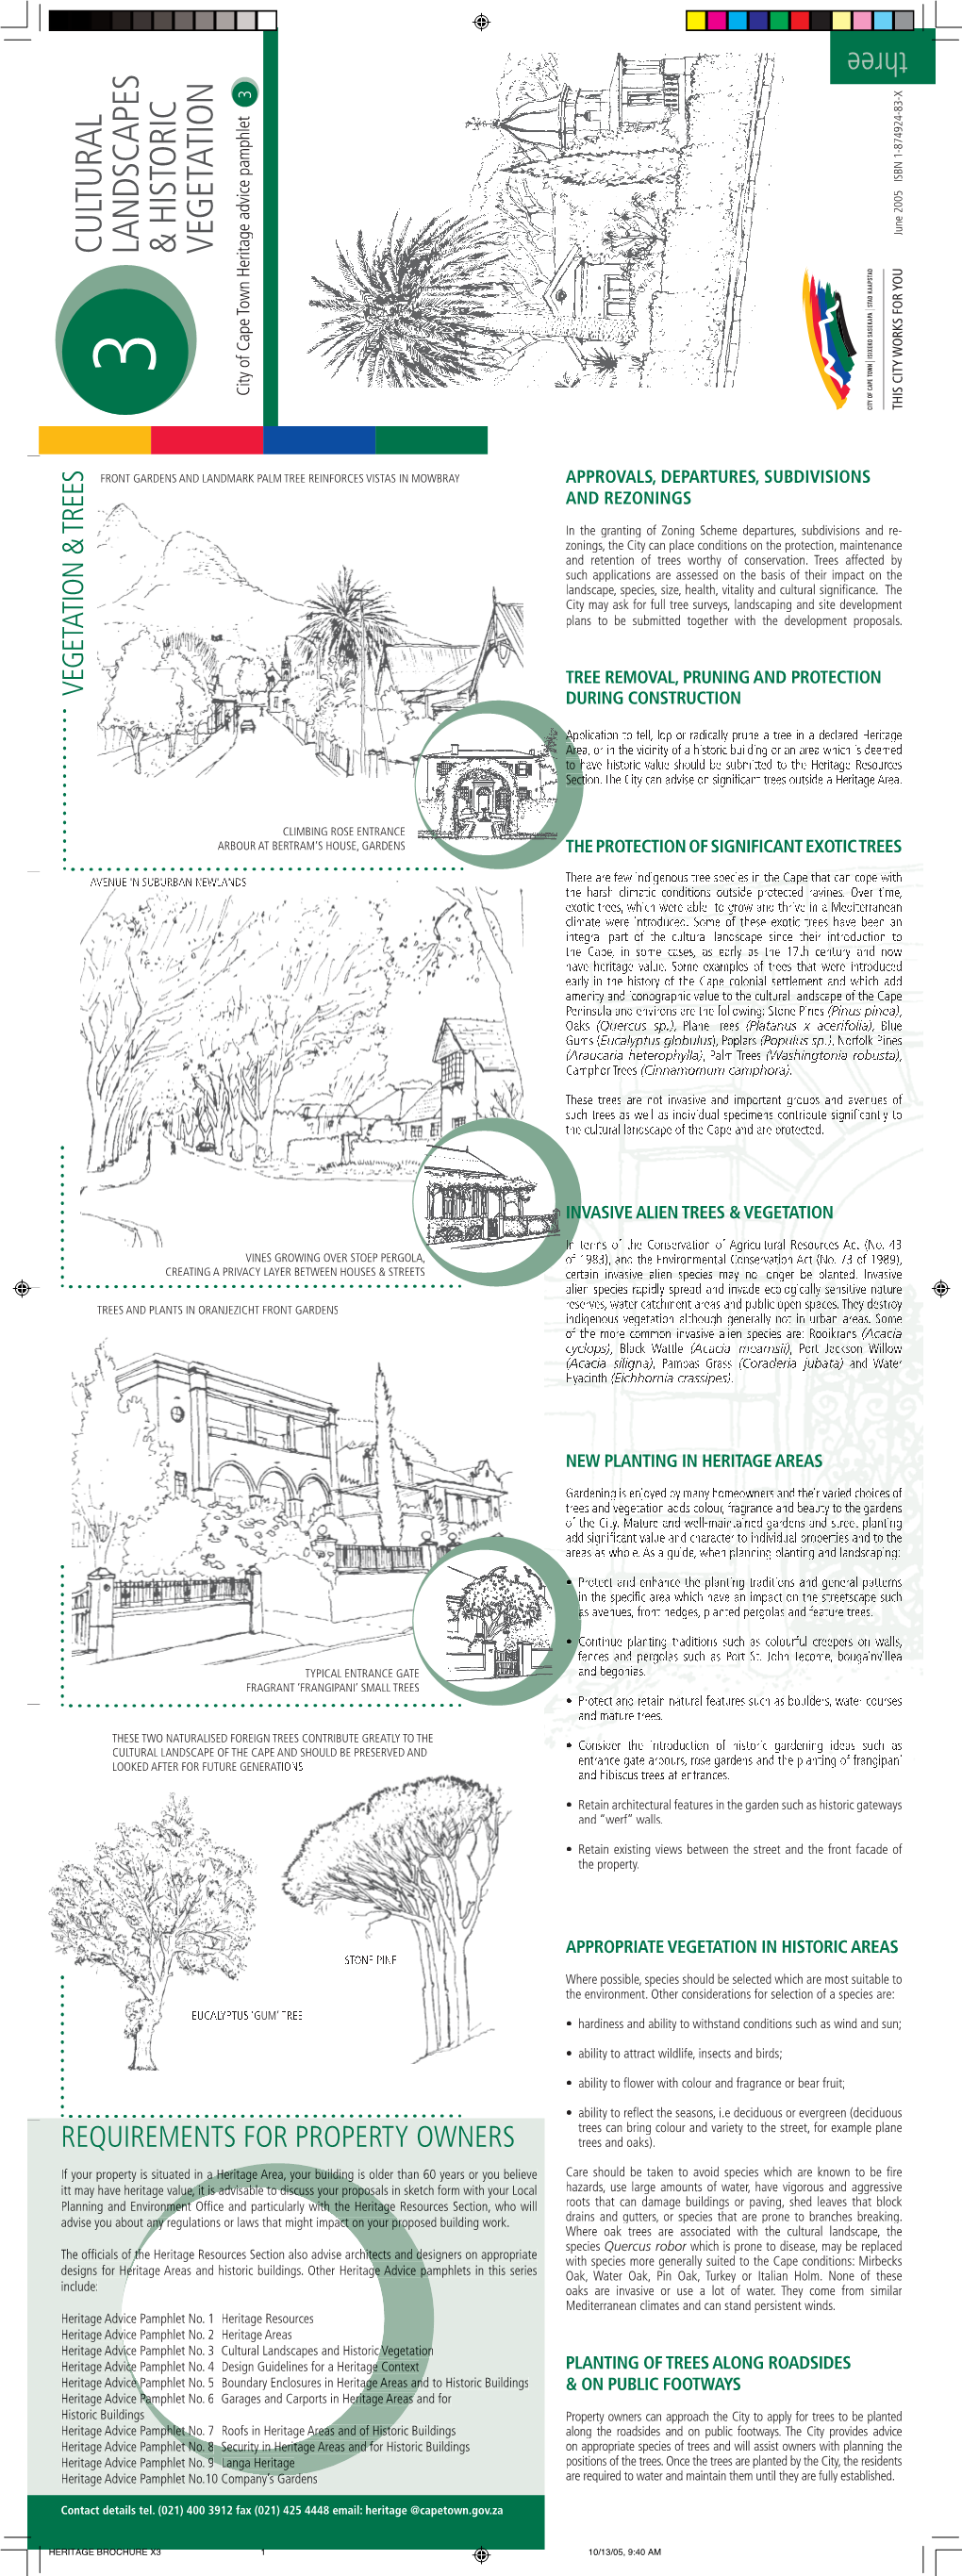 Heritage Brochure: Cultural Landscapes & Historic Vegetation